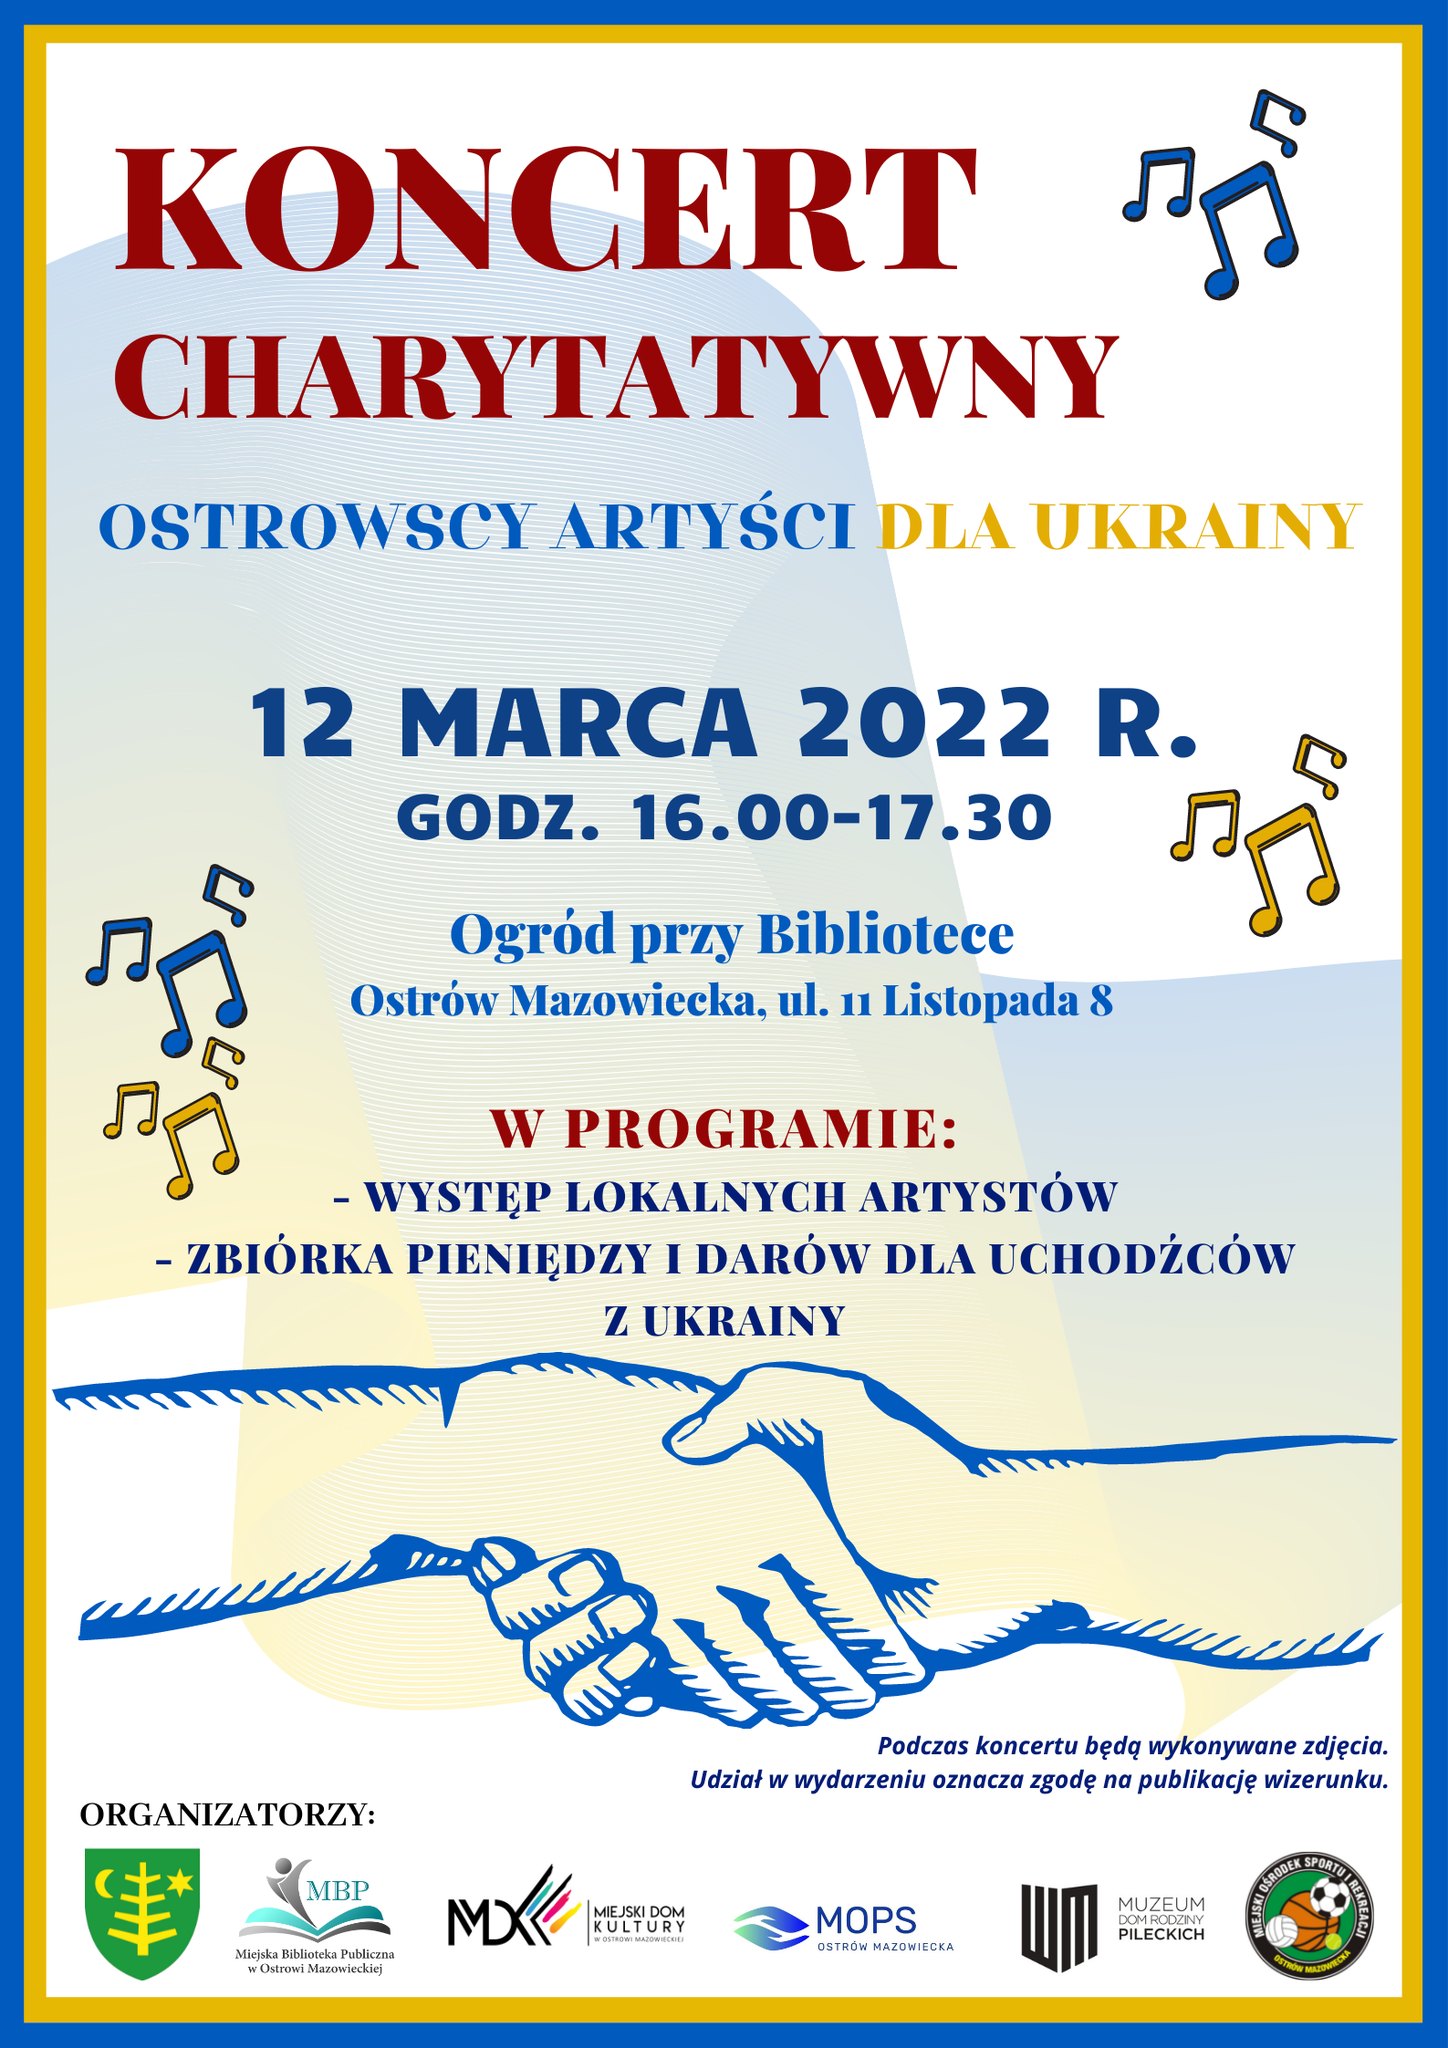 Zdjęcie przedstawia plakat informacyjny o koncercie charytatywnym organizowanym przez Miejską Bibliotekę Publiczną w Ostrowi Mazowieckiej na rzecz uchodźców w dniu 12 marca 2022 roku